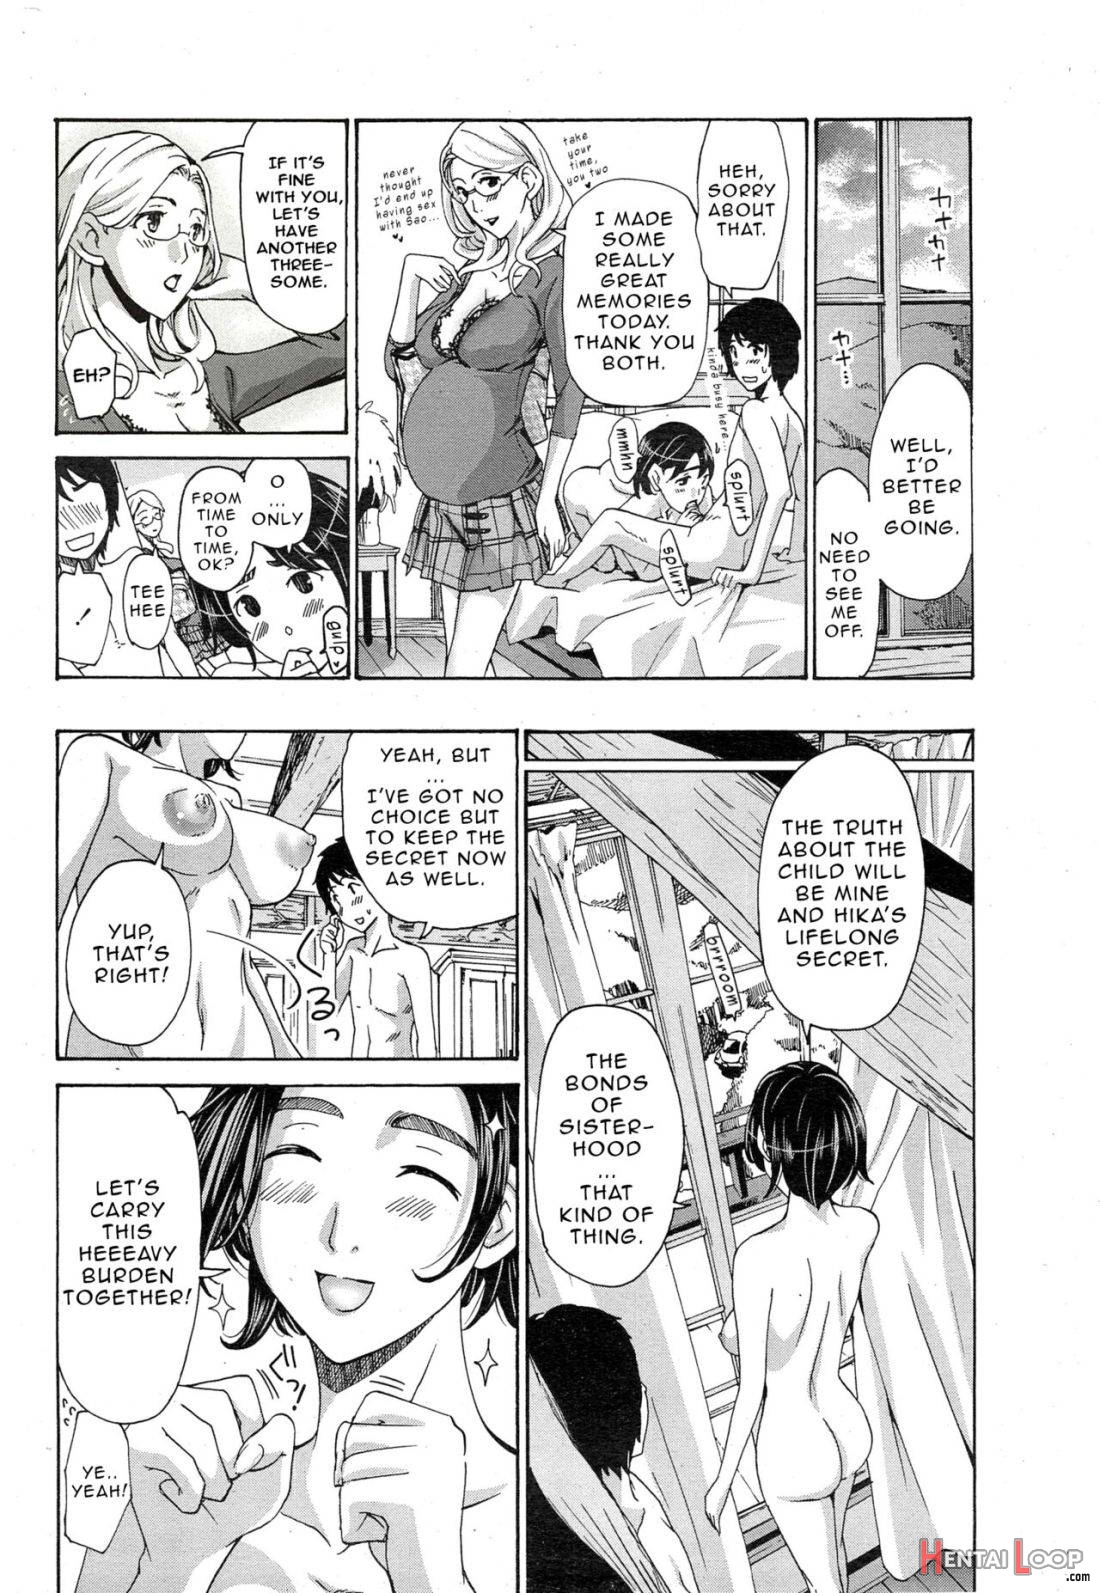 Watashito Iikoto Shiyo? page 146